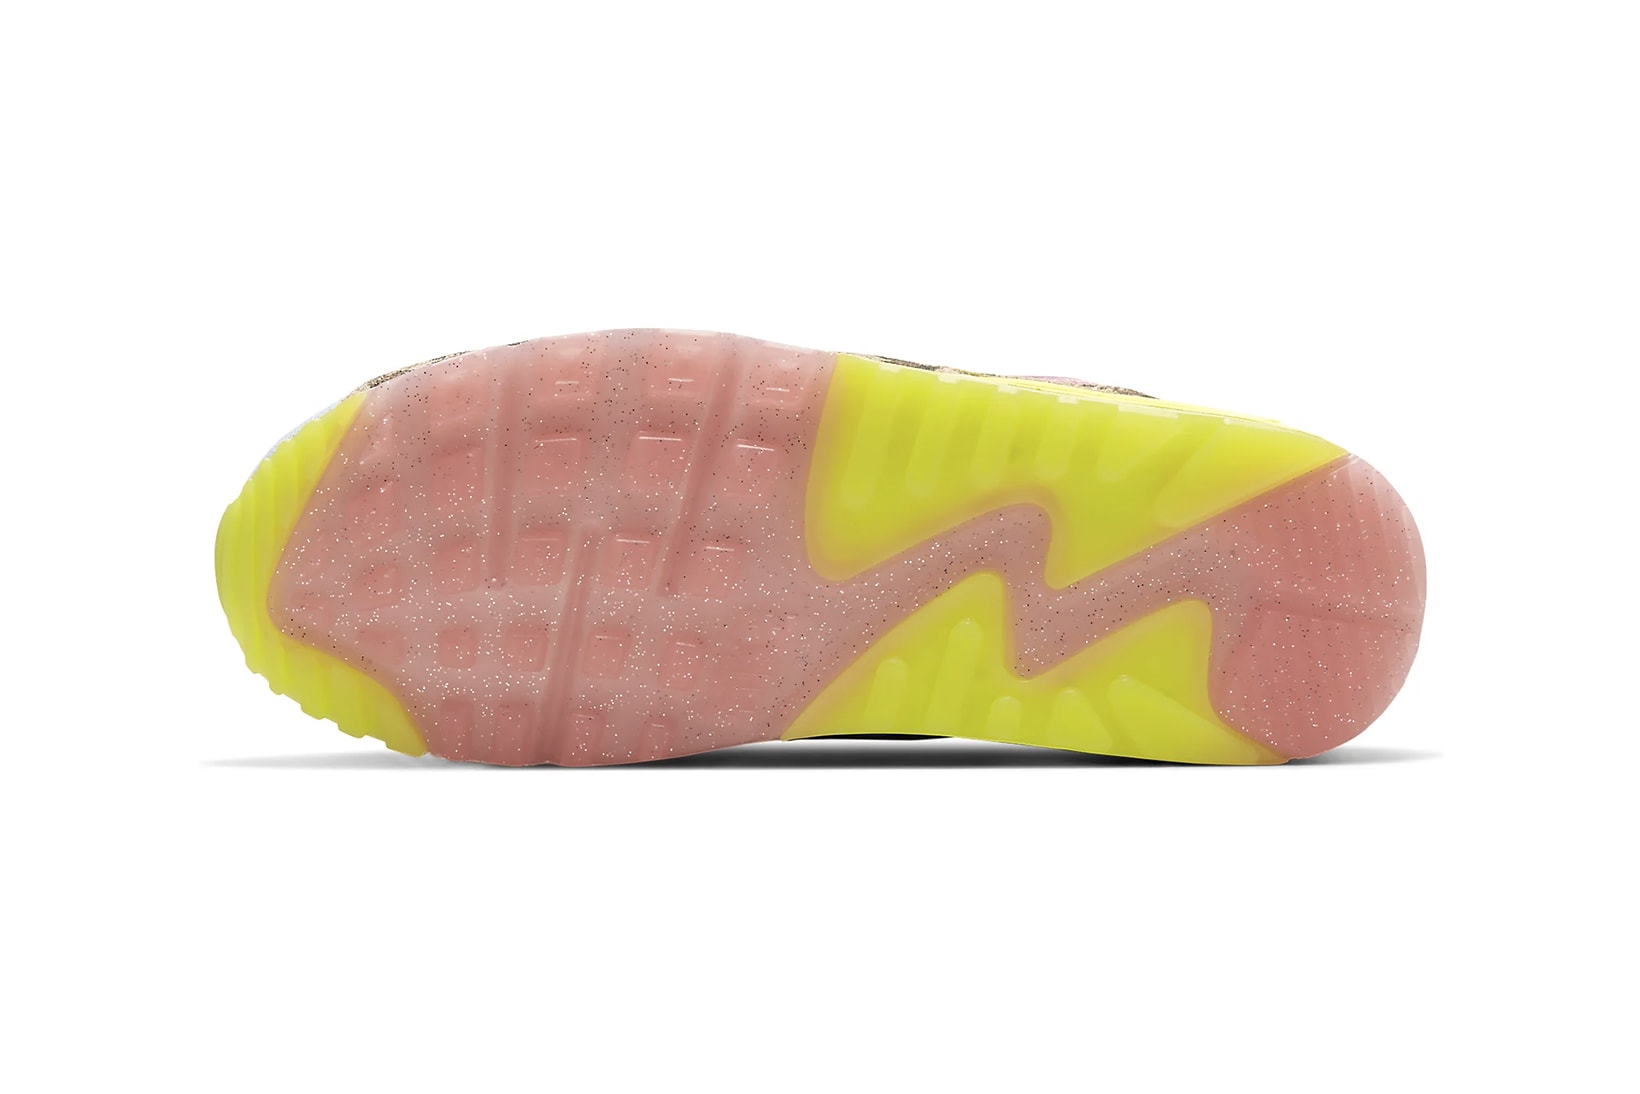 nike air max 90 womens sneakers leopard print pastel blue neon green pink shoes footwear sneakerhead